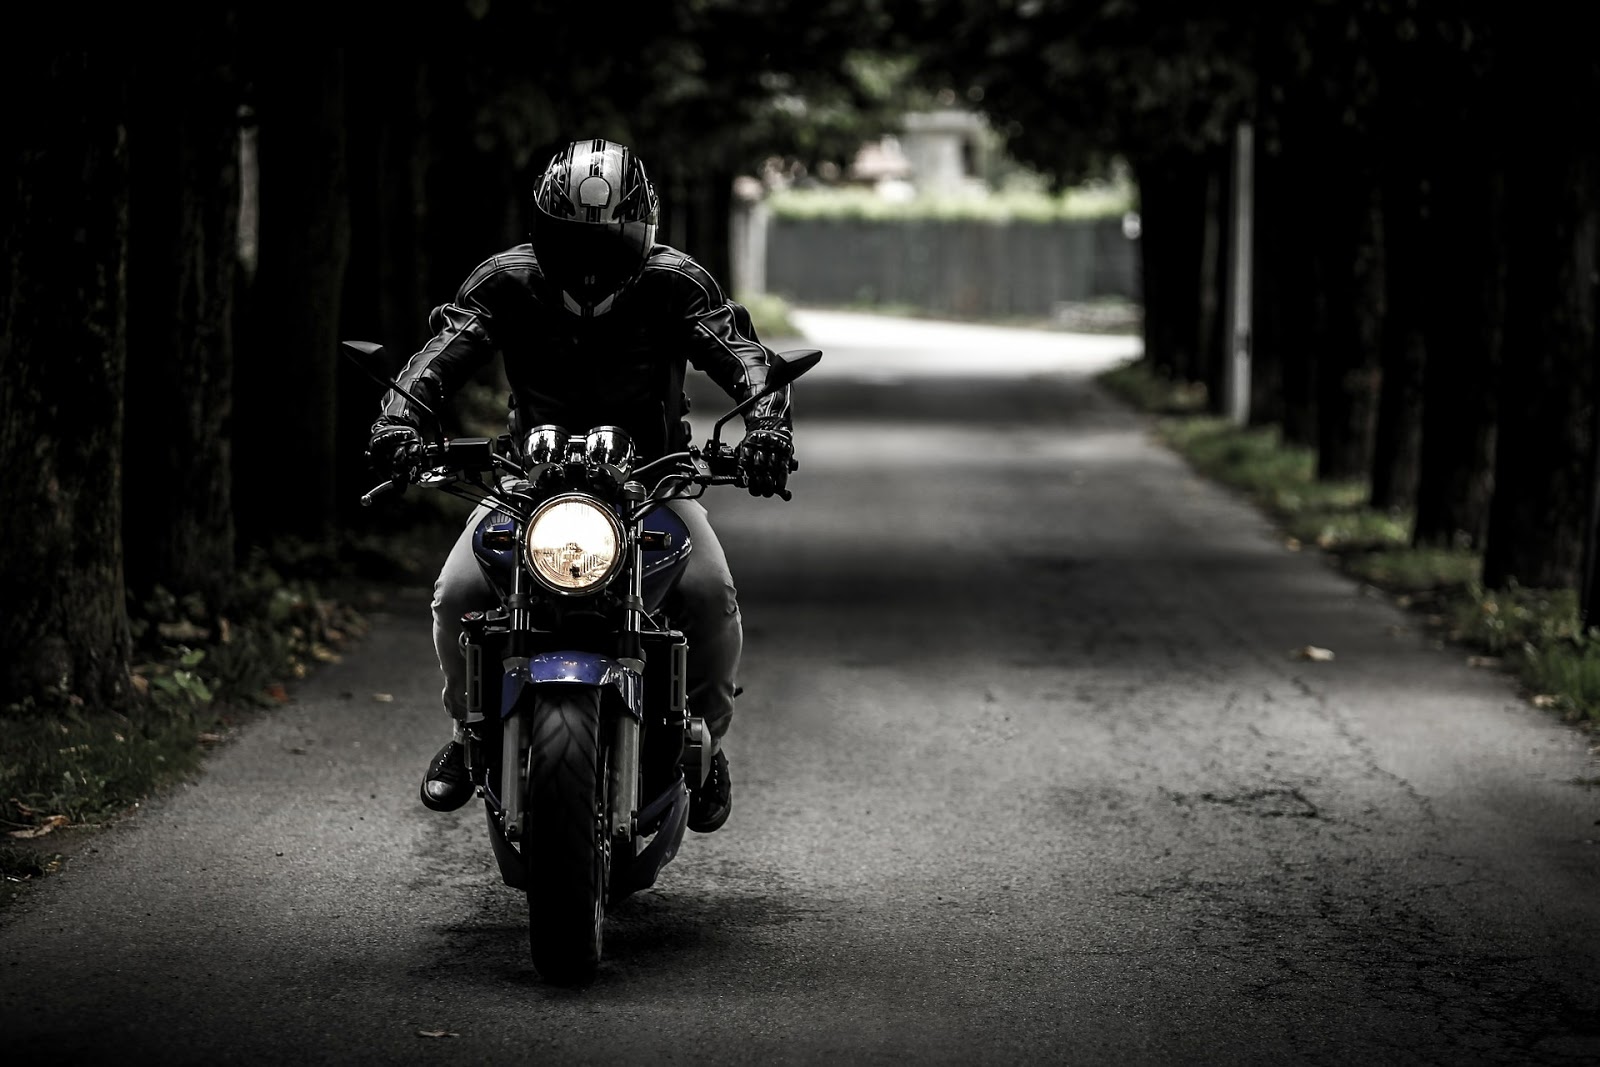 En coche o en moto, la importancia de ir tranquilo y seguro